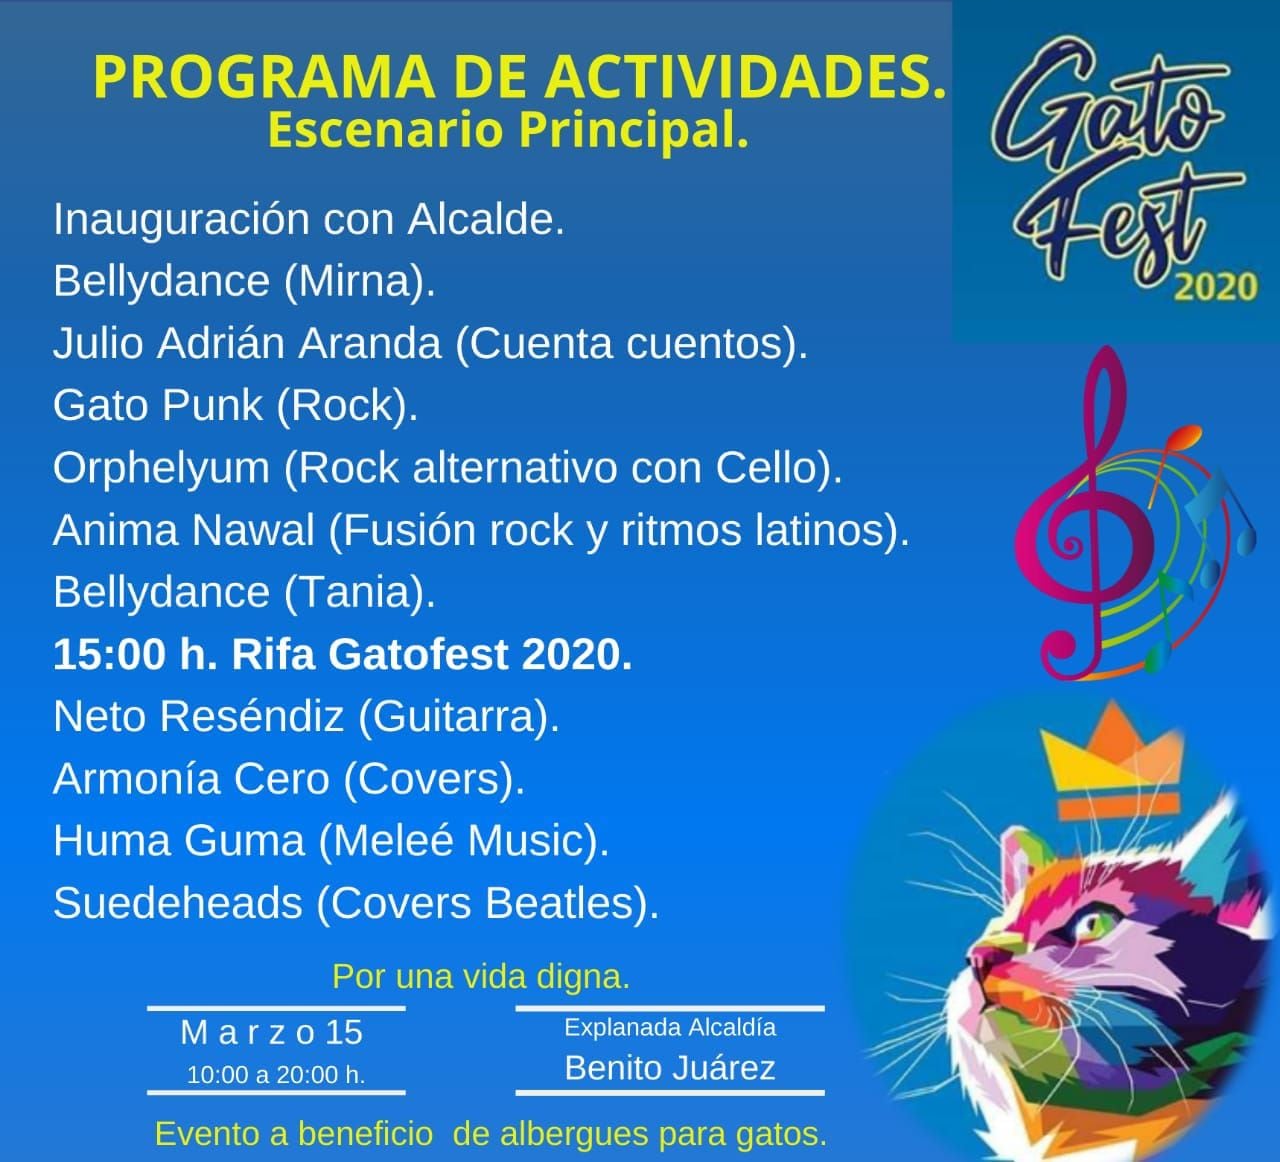 Parte de las actividades que se realizarán son pequeños conciertos y presentaciones de baile (Foto: Facebook/Gato Fest)